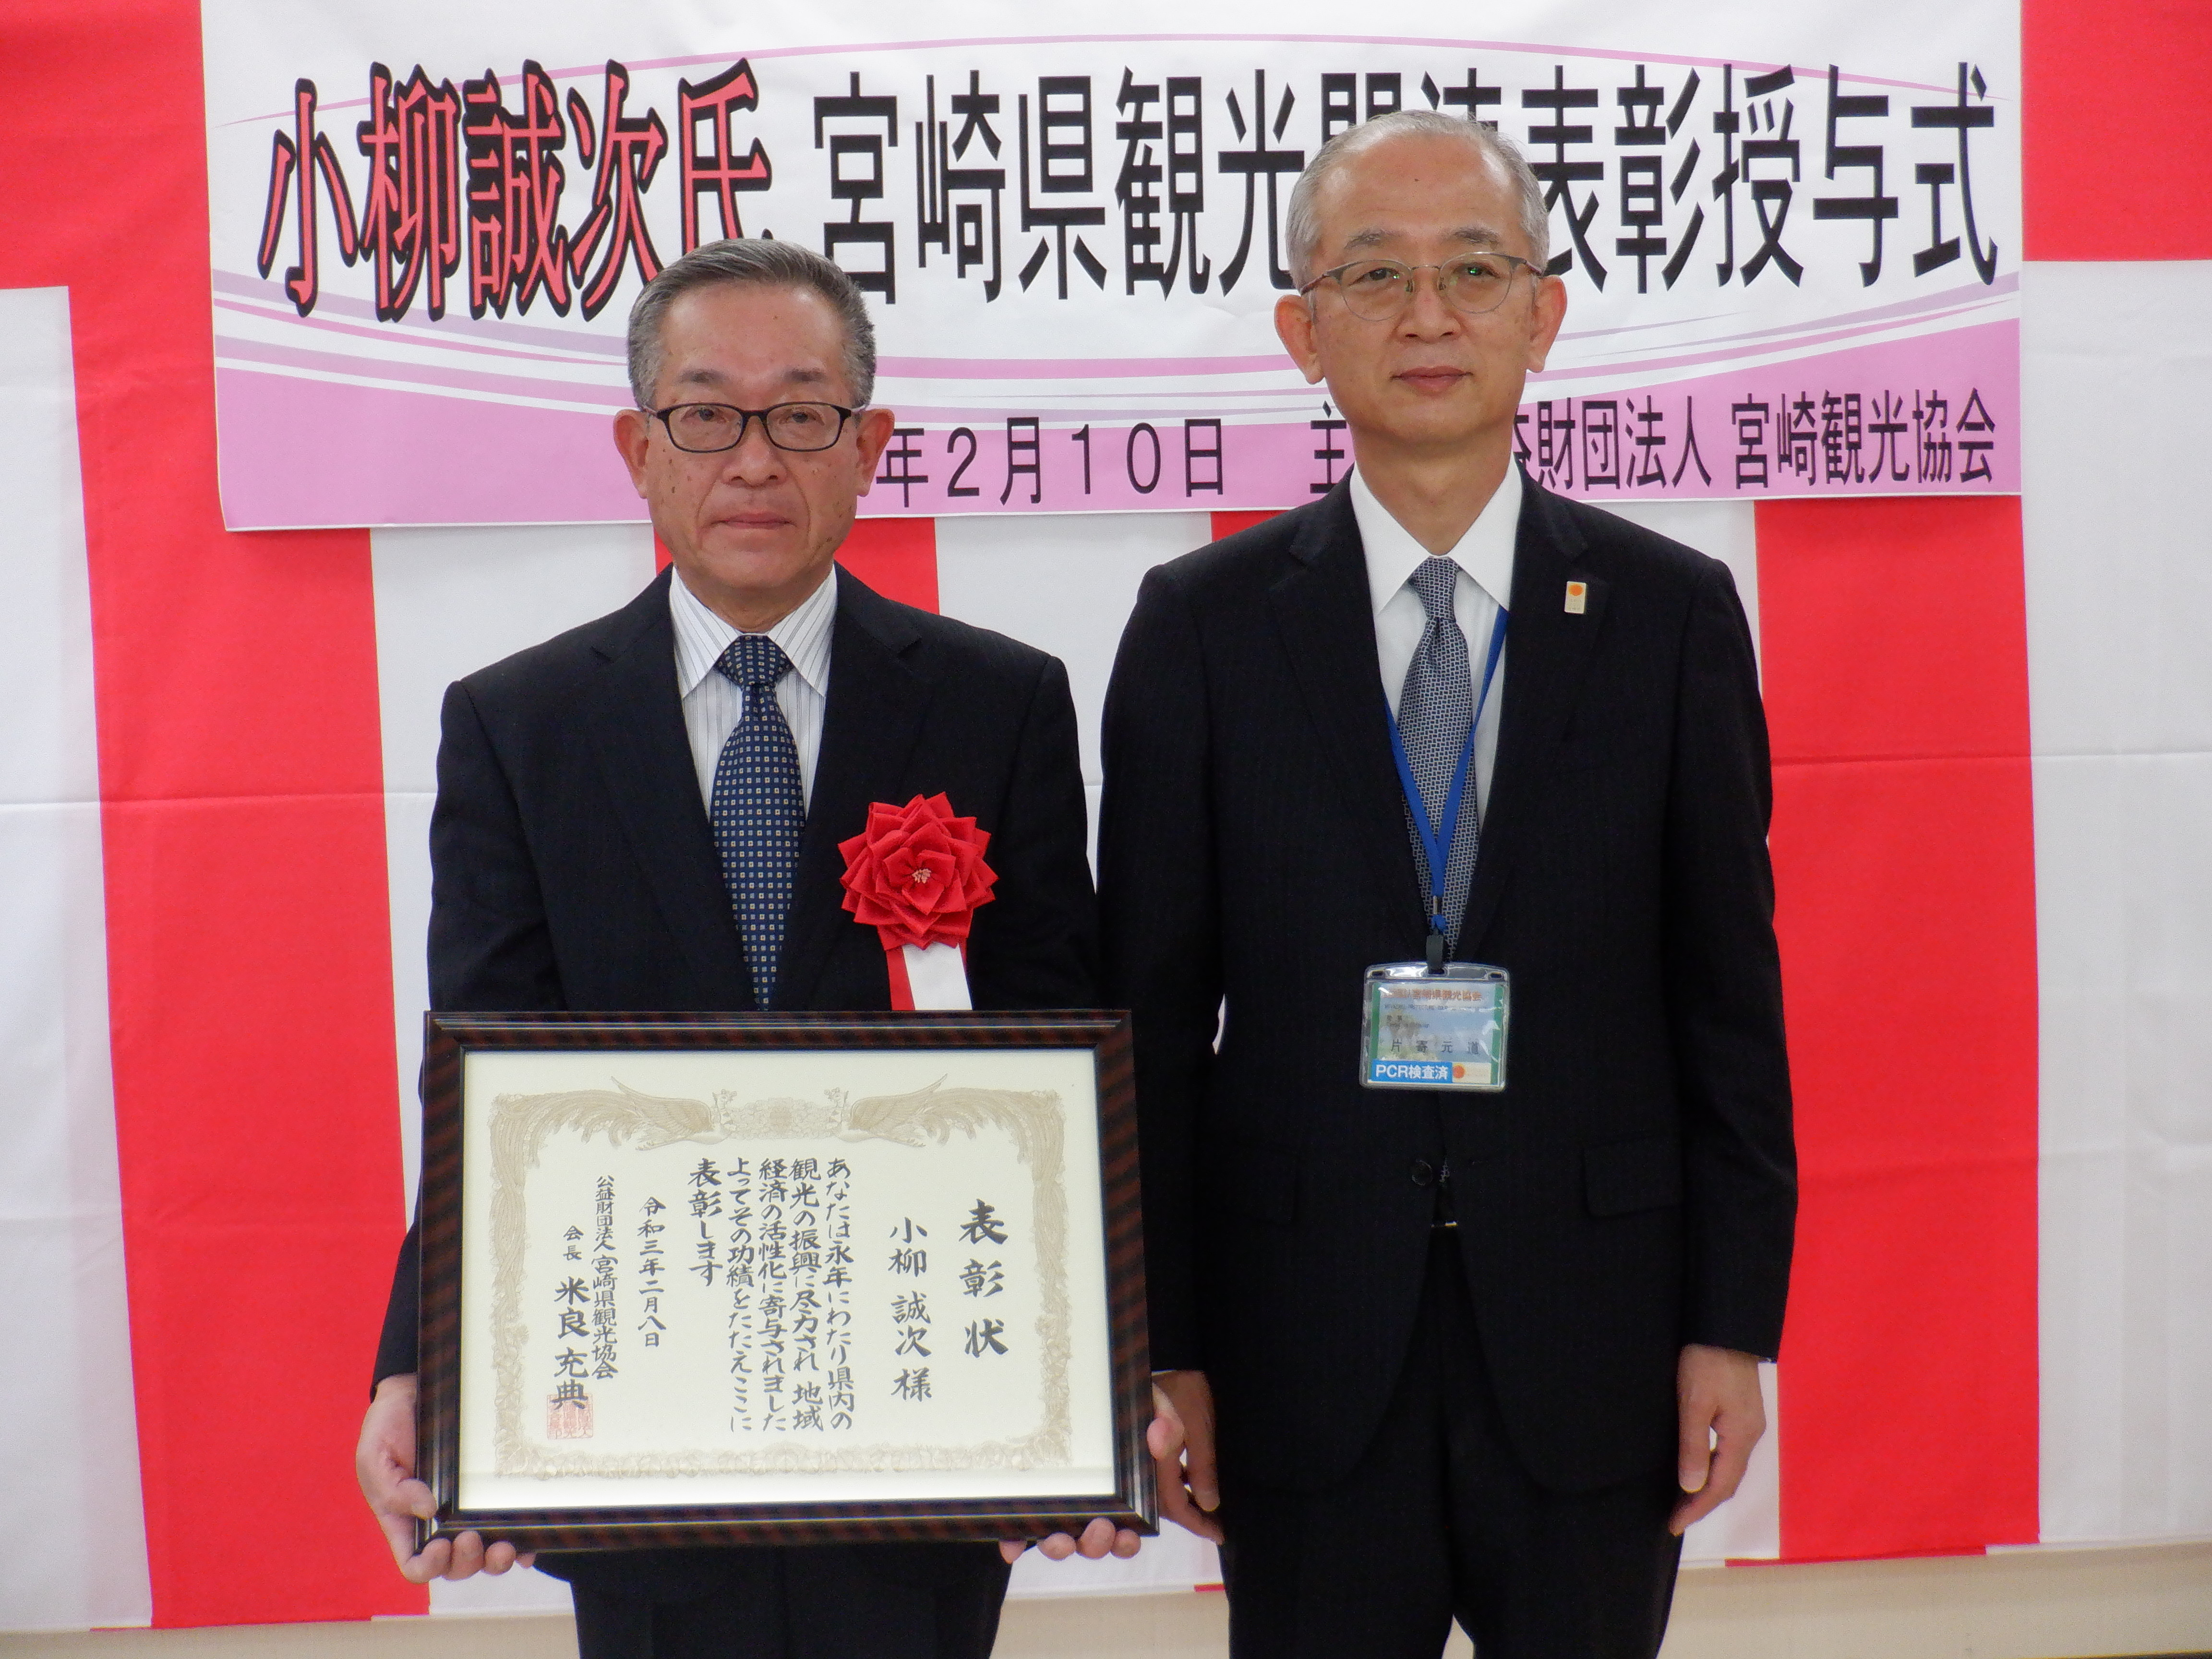 「小柳誠次様」宮崎県観光協会様から表彰されました。